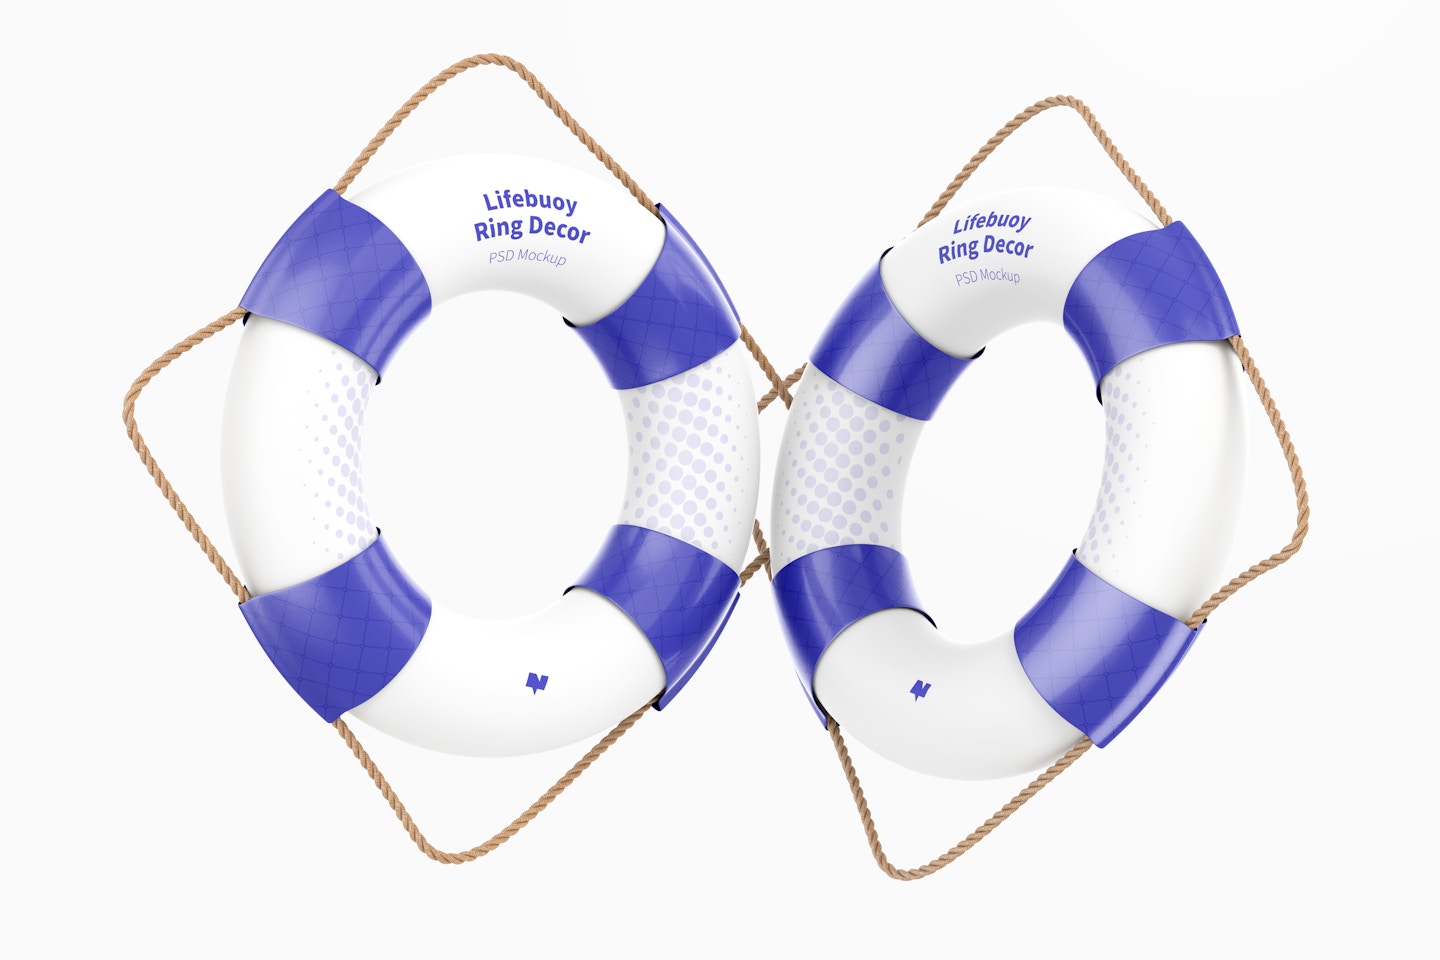 Lifebuoy Rings Decor Mockup, Floating